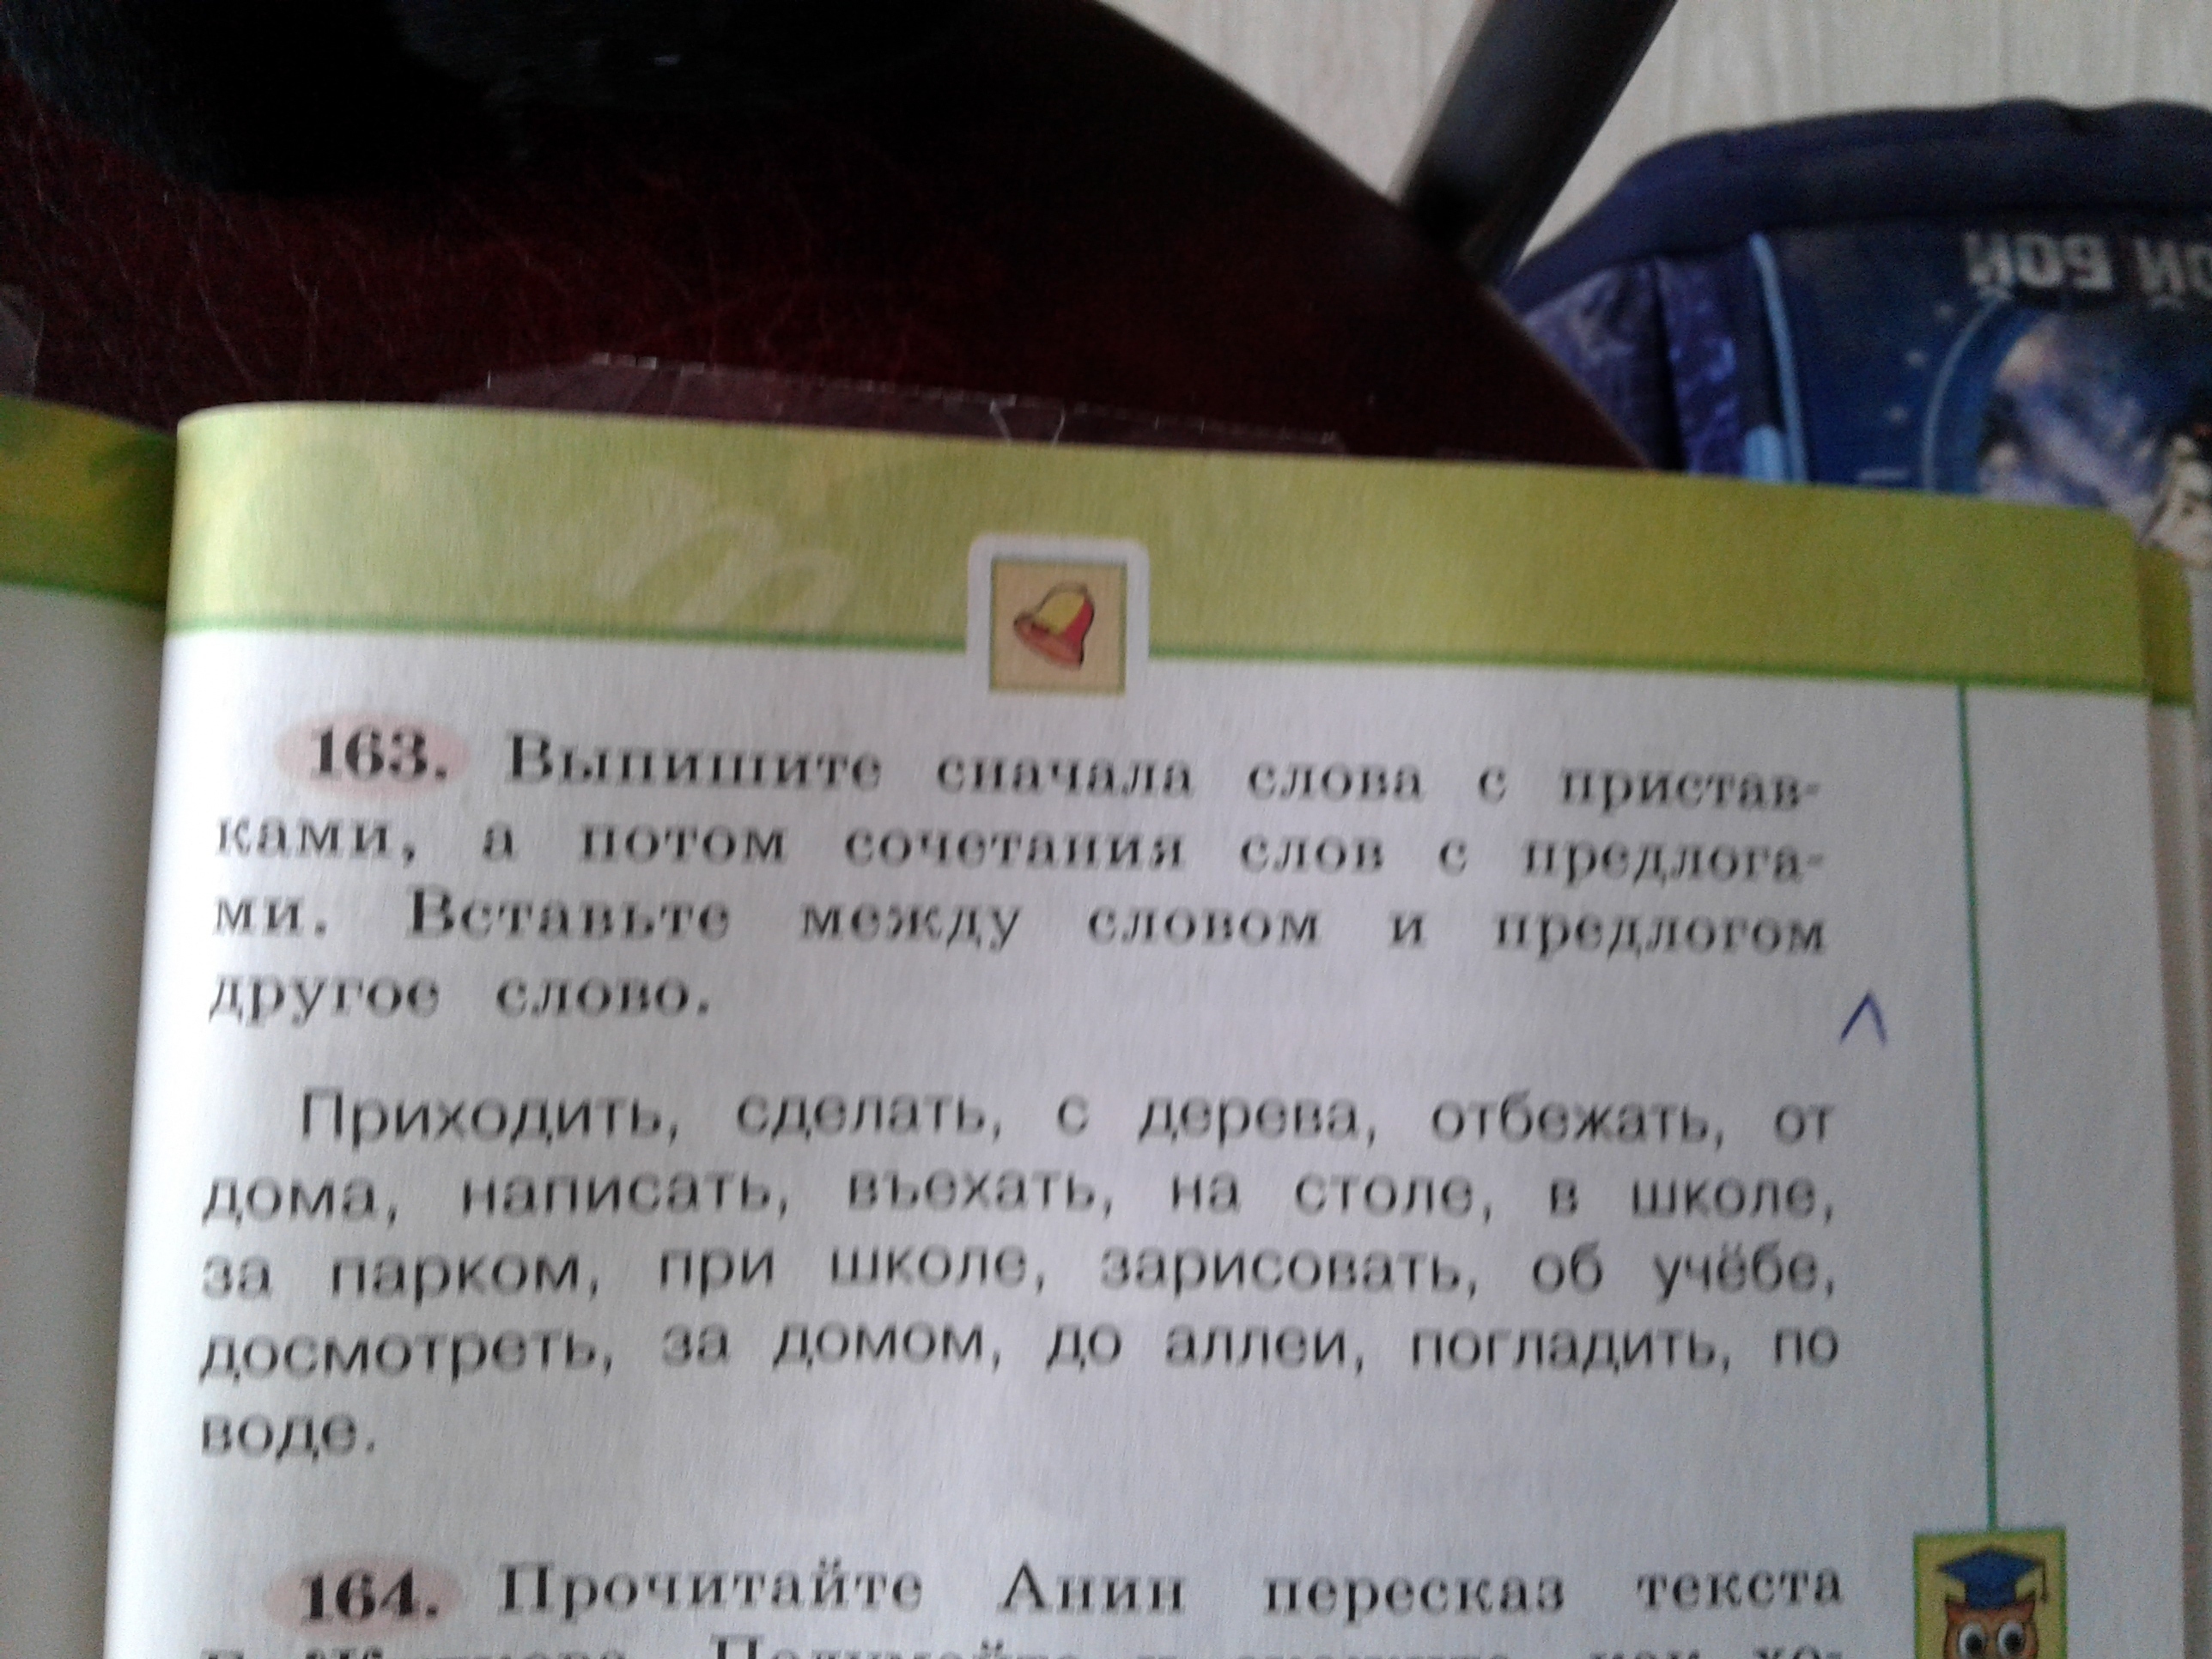 Прочитать слова выделить приставку. Прочитать слова выделить приставку если она есть. Приставки в русском языке.